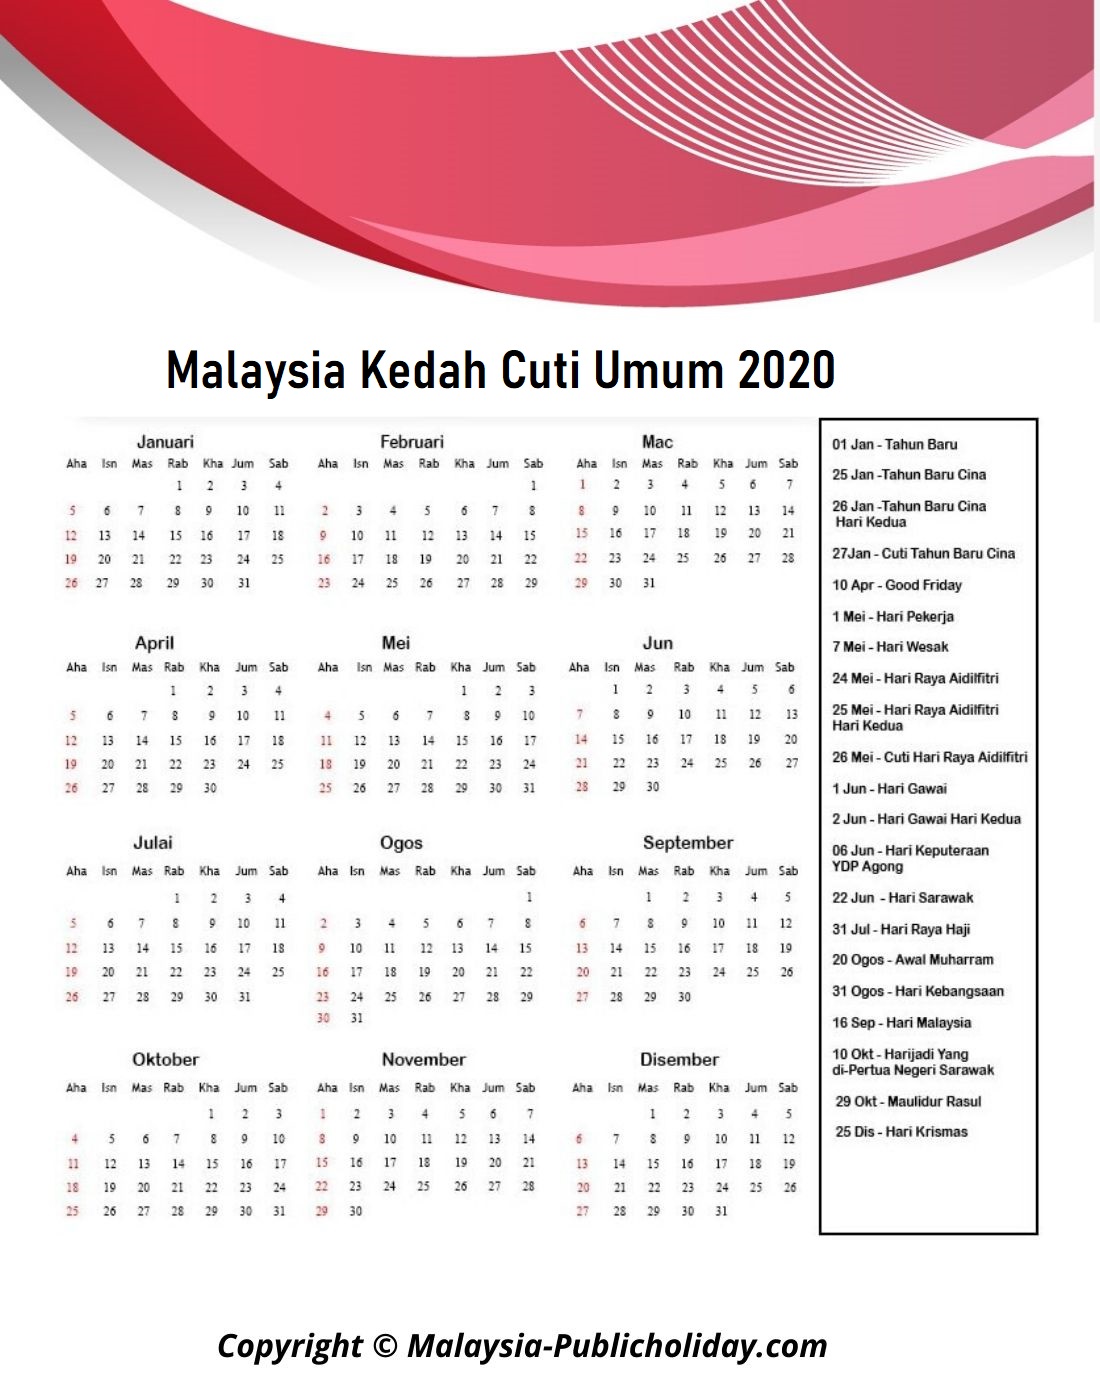 Kalendar Kedah 2020 Malaysia